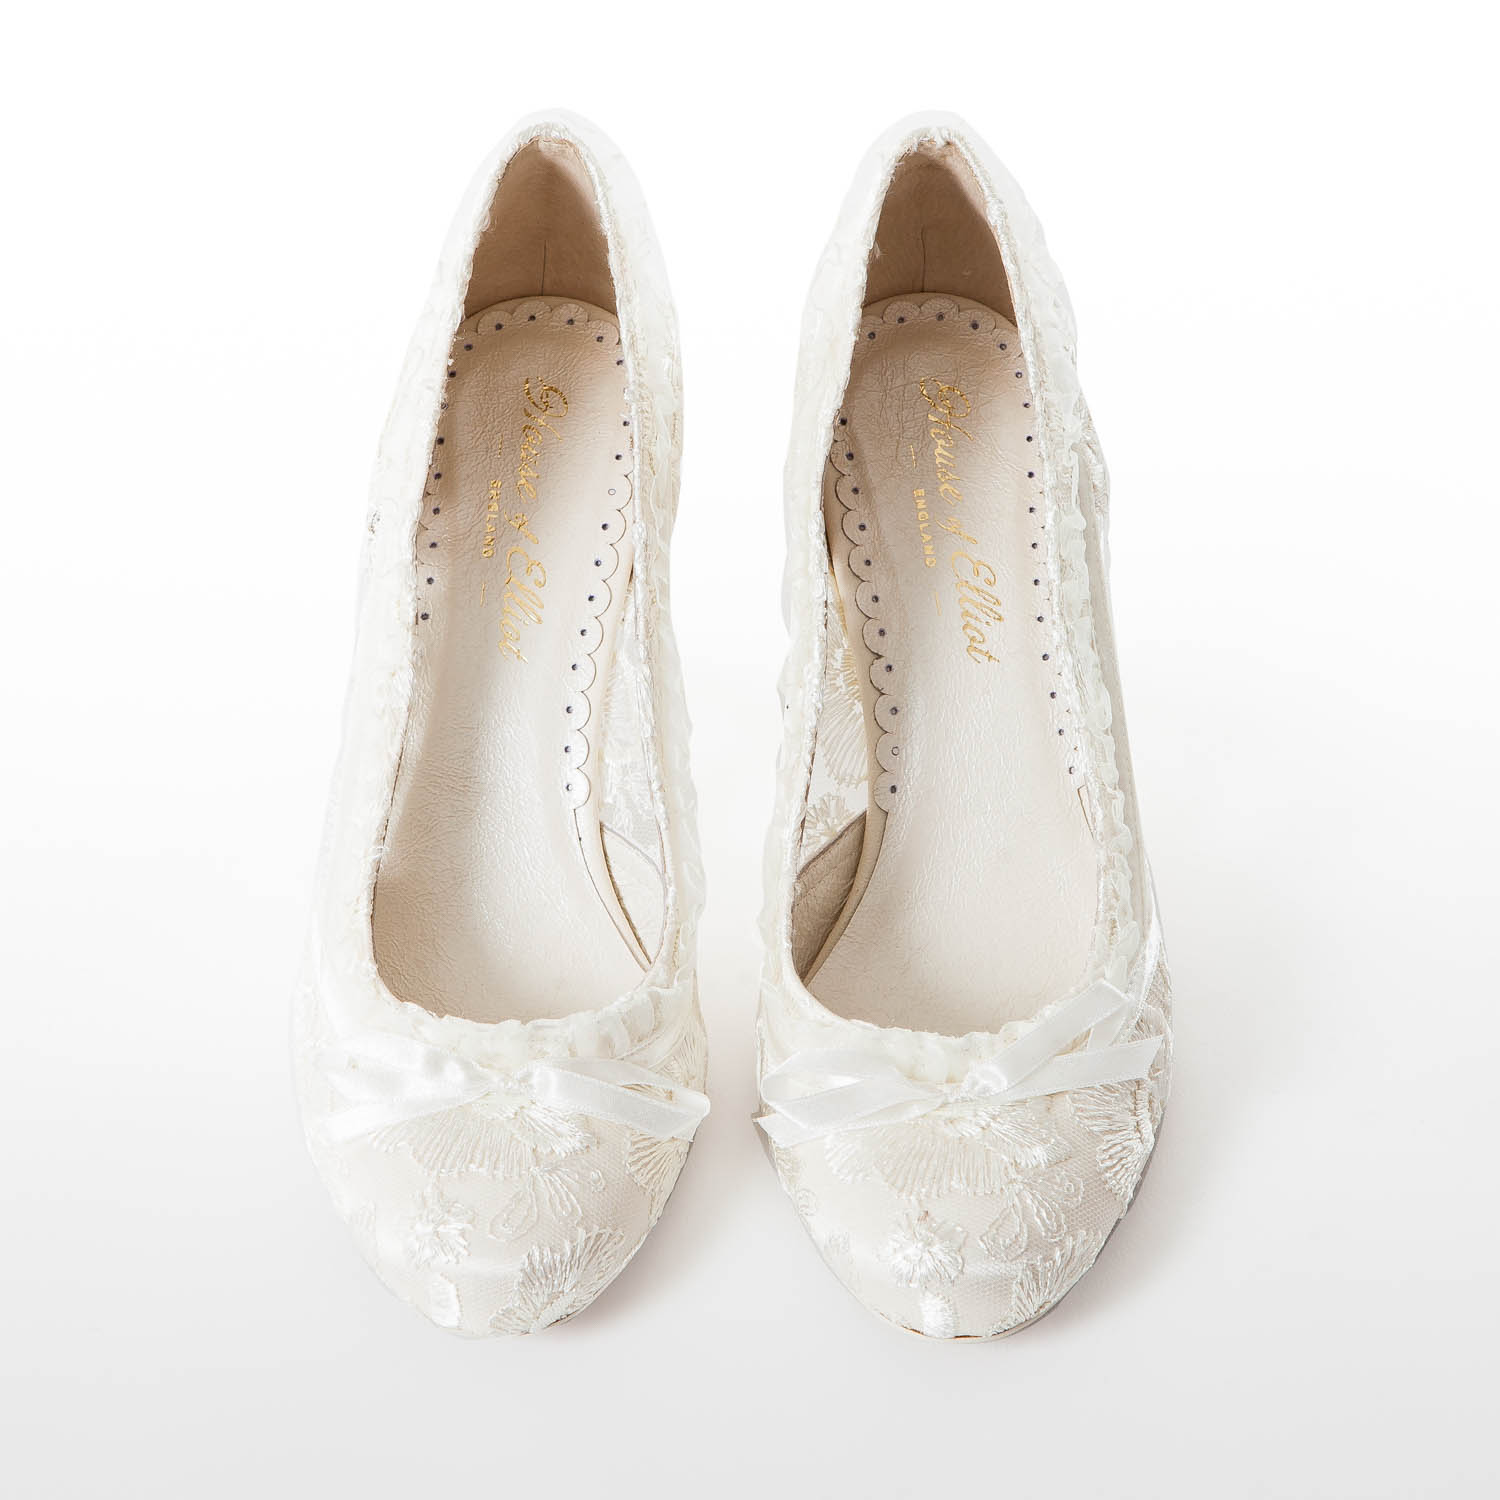 unique bridal shoes uk